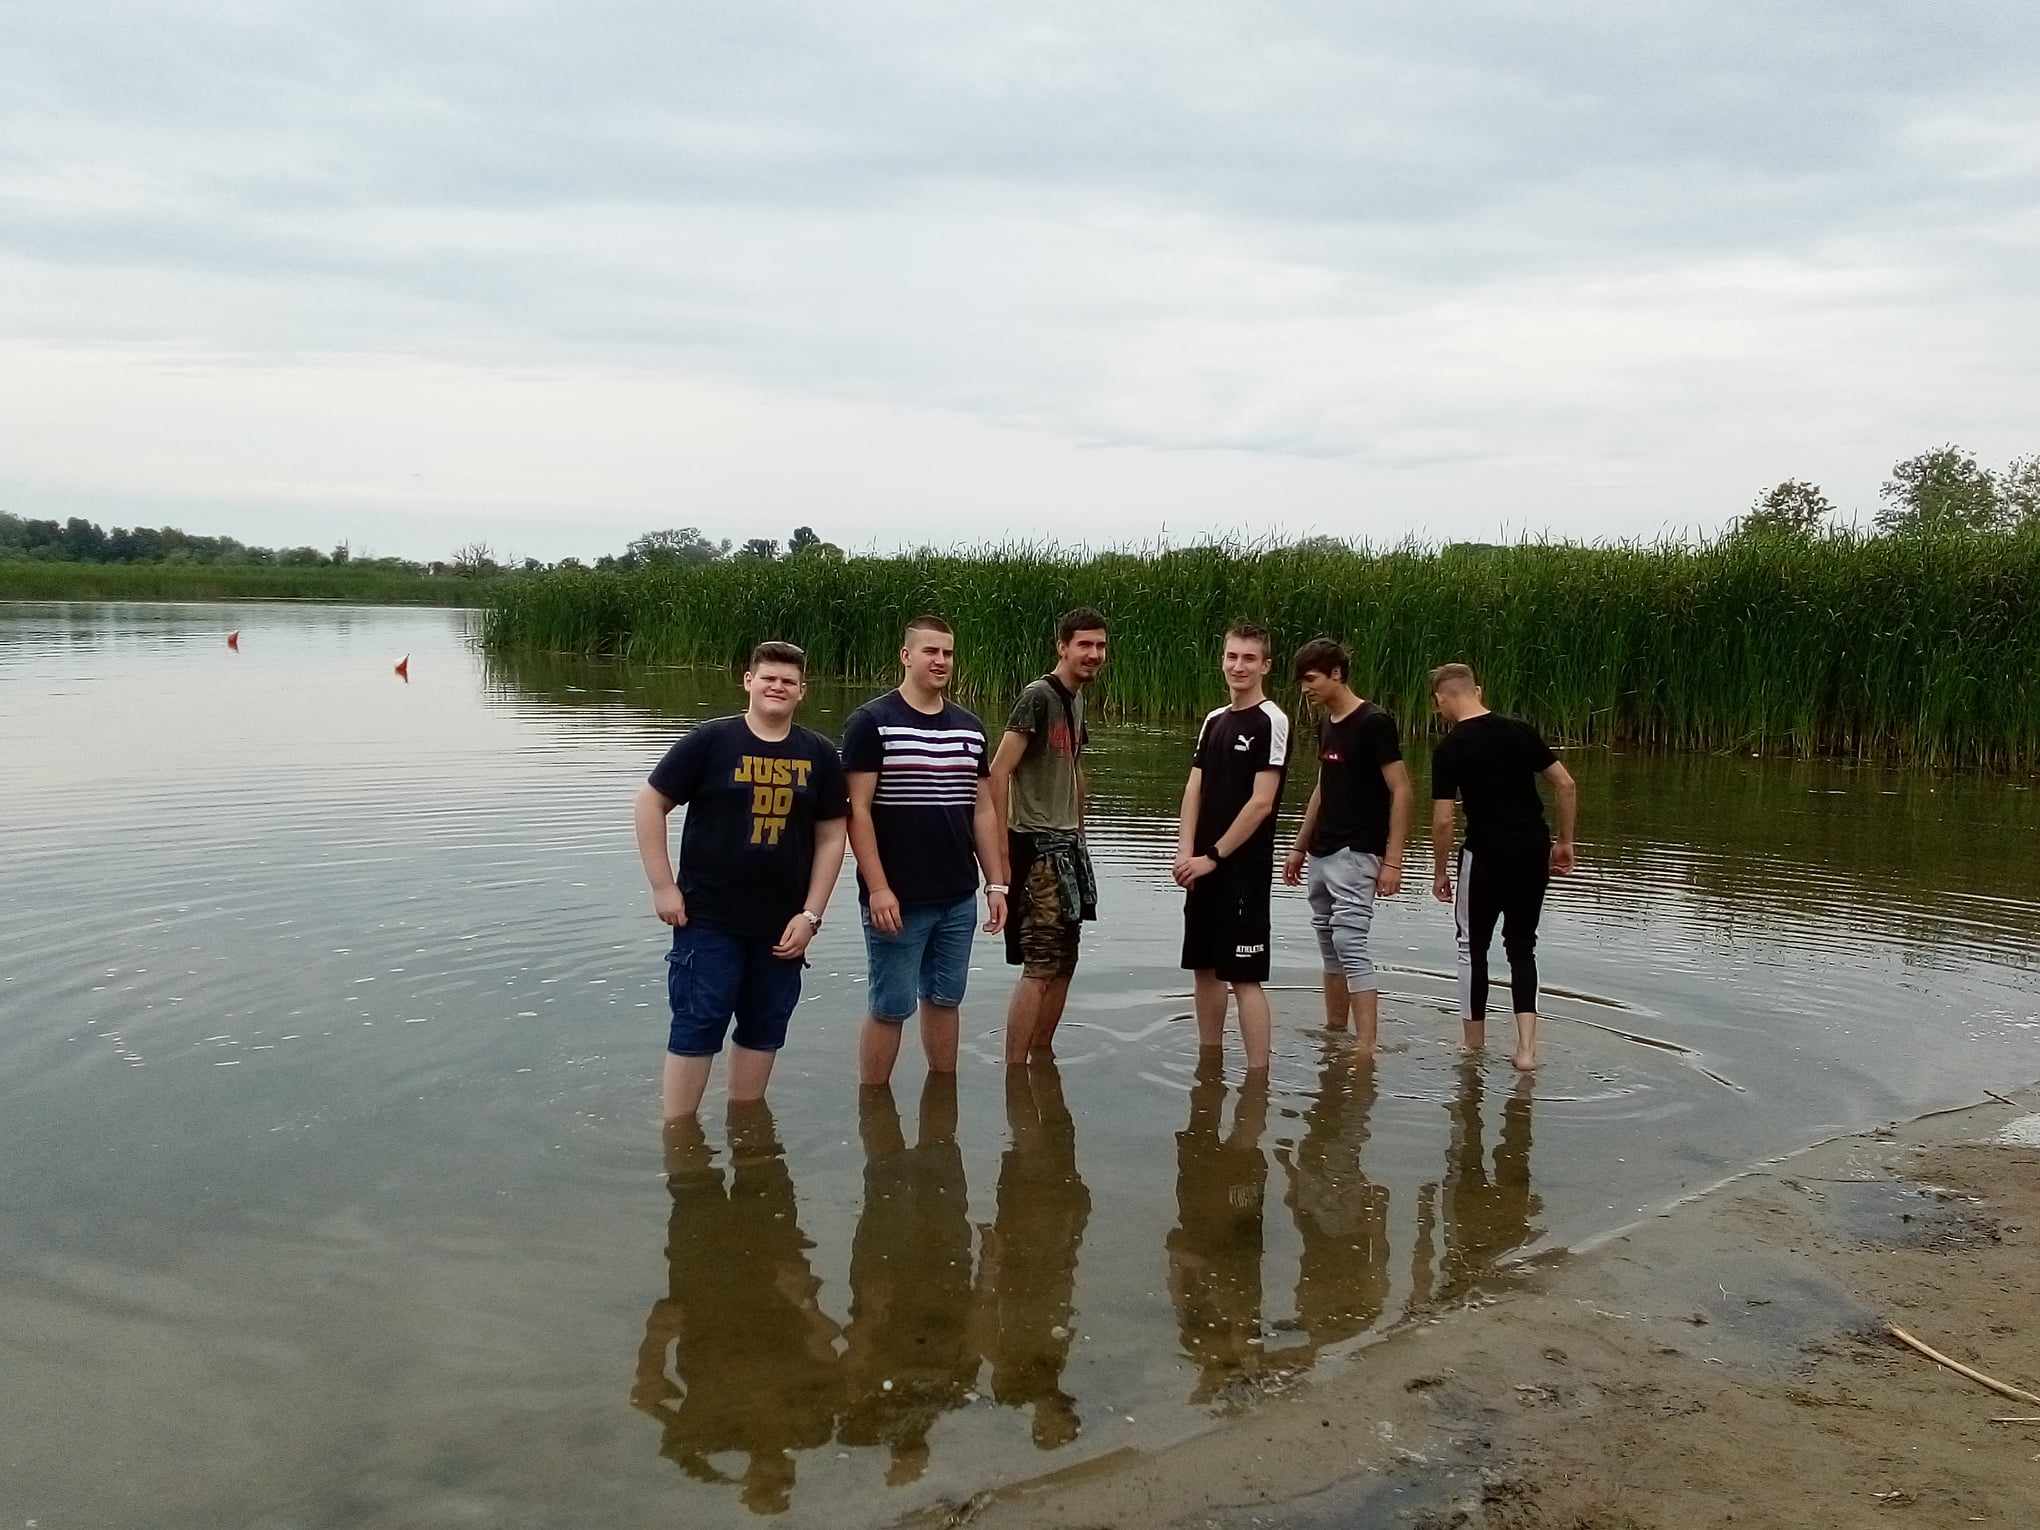 Egy hat fiatal férfiból álló csoport sekély vízben áll egy tó partján, részben borjaikig elmerülve. A háttérben magas nád és felhős égbolt látható, ami borús napra utal. Úgy tűnik, hogy egy laza pillanatot élveznek a víz mellett.